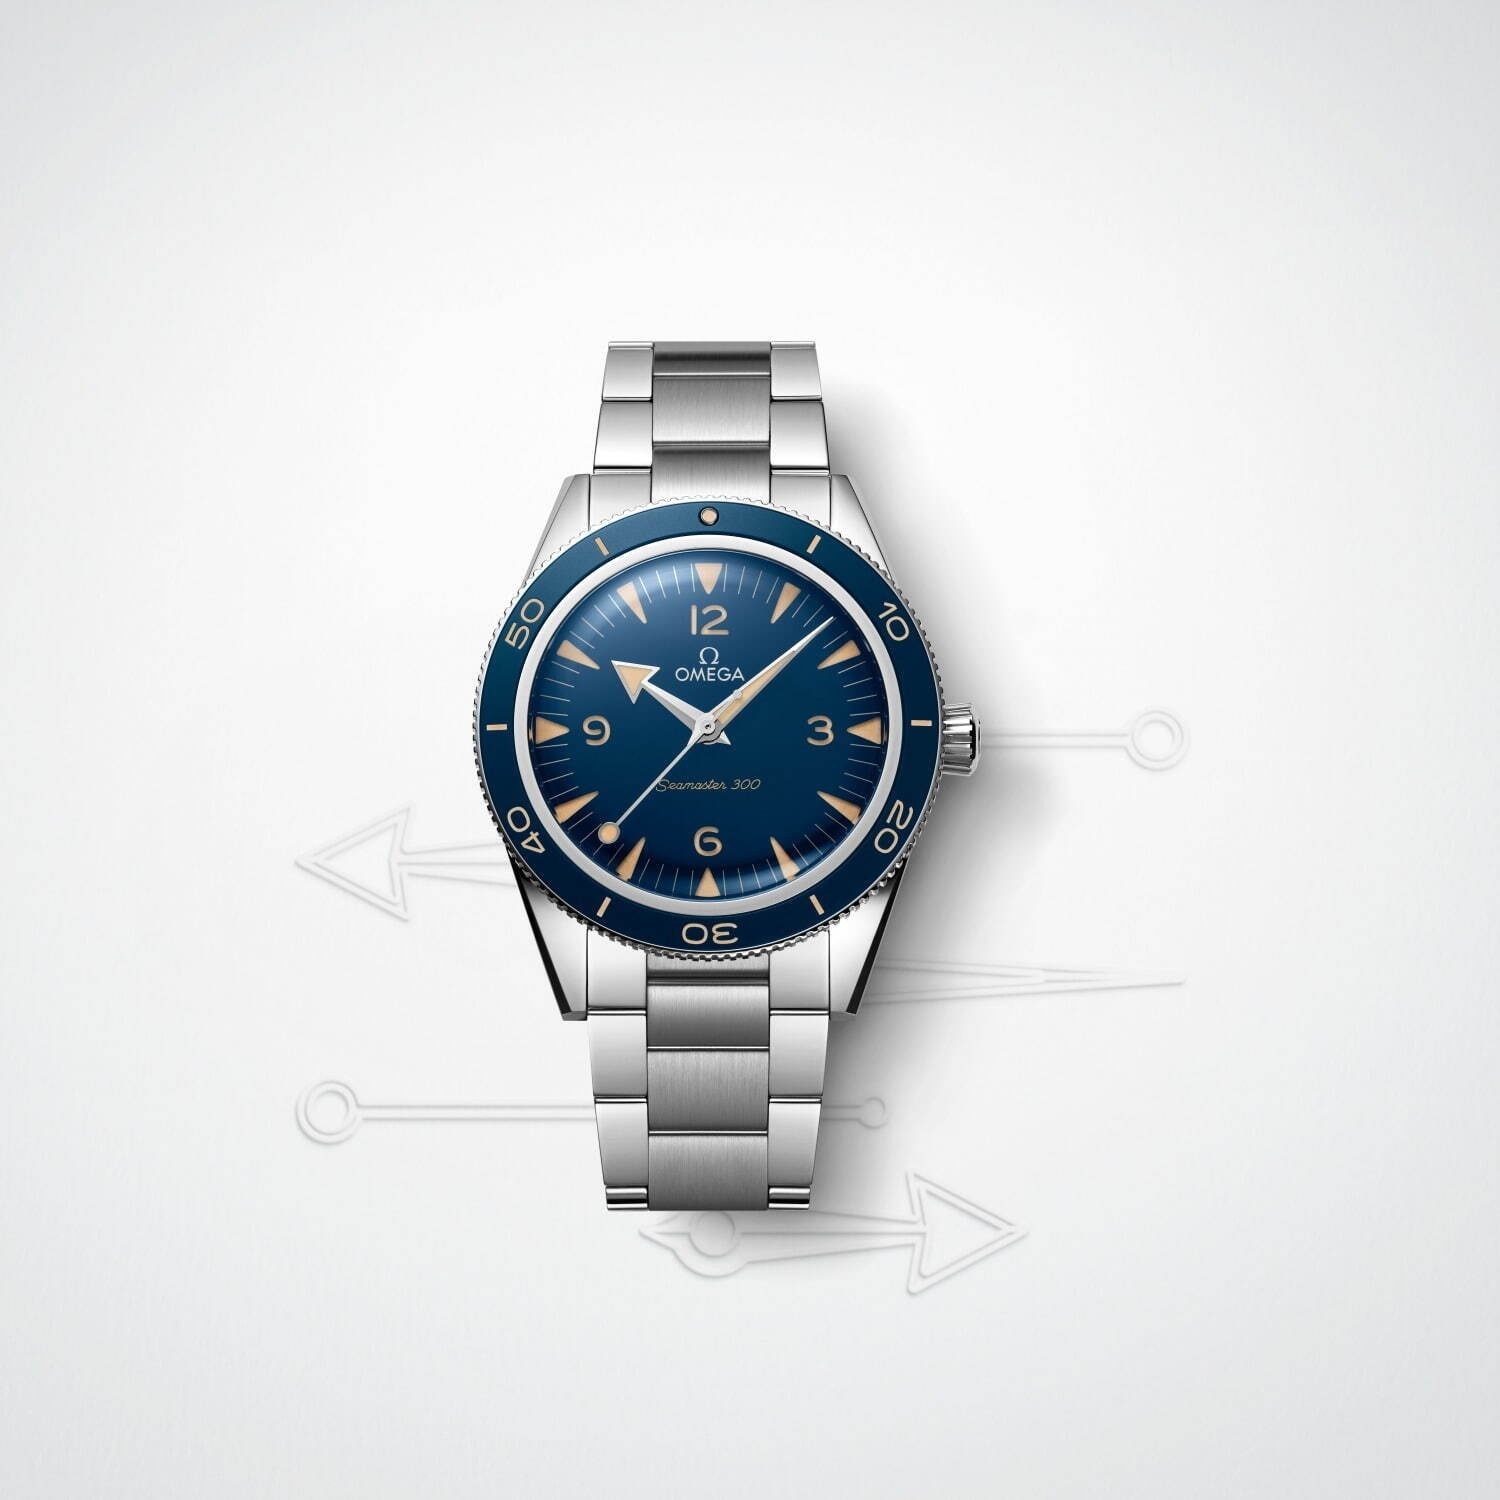 メンズ高級腕時計」特集、人気ブランドのおすすめ高級時計を一覧で紹介 ファッションプレス